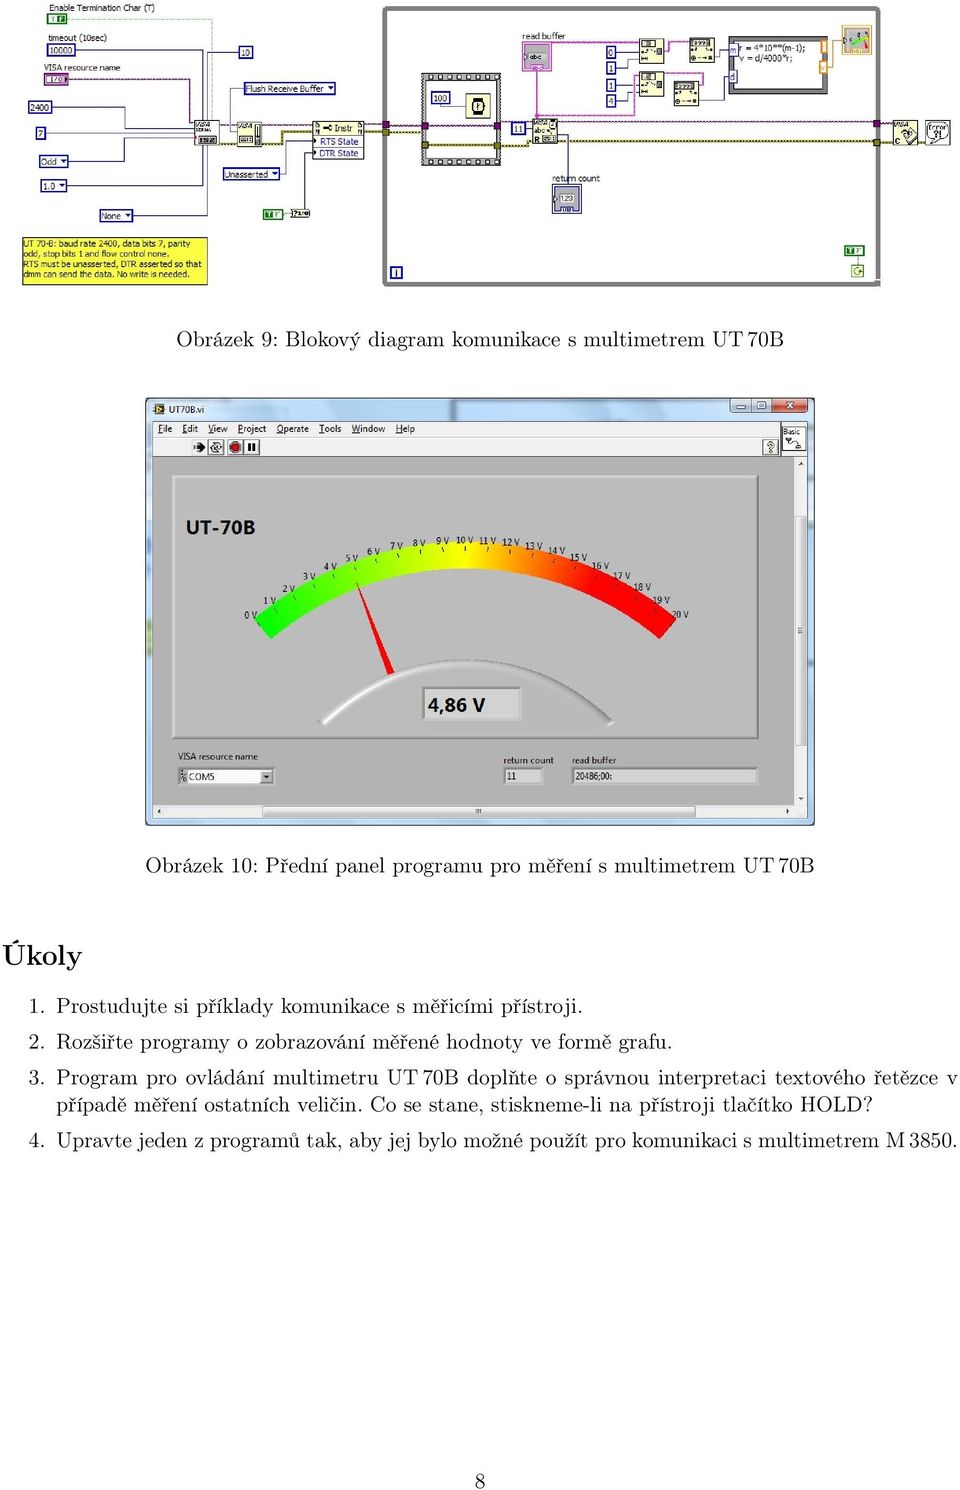 Program pro ovládání multimetru UT 70B doplňte o správnou interpretaci textového řetězce v případě měření ostatních veličin.